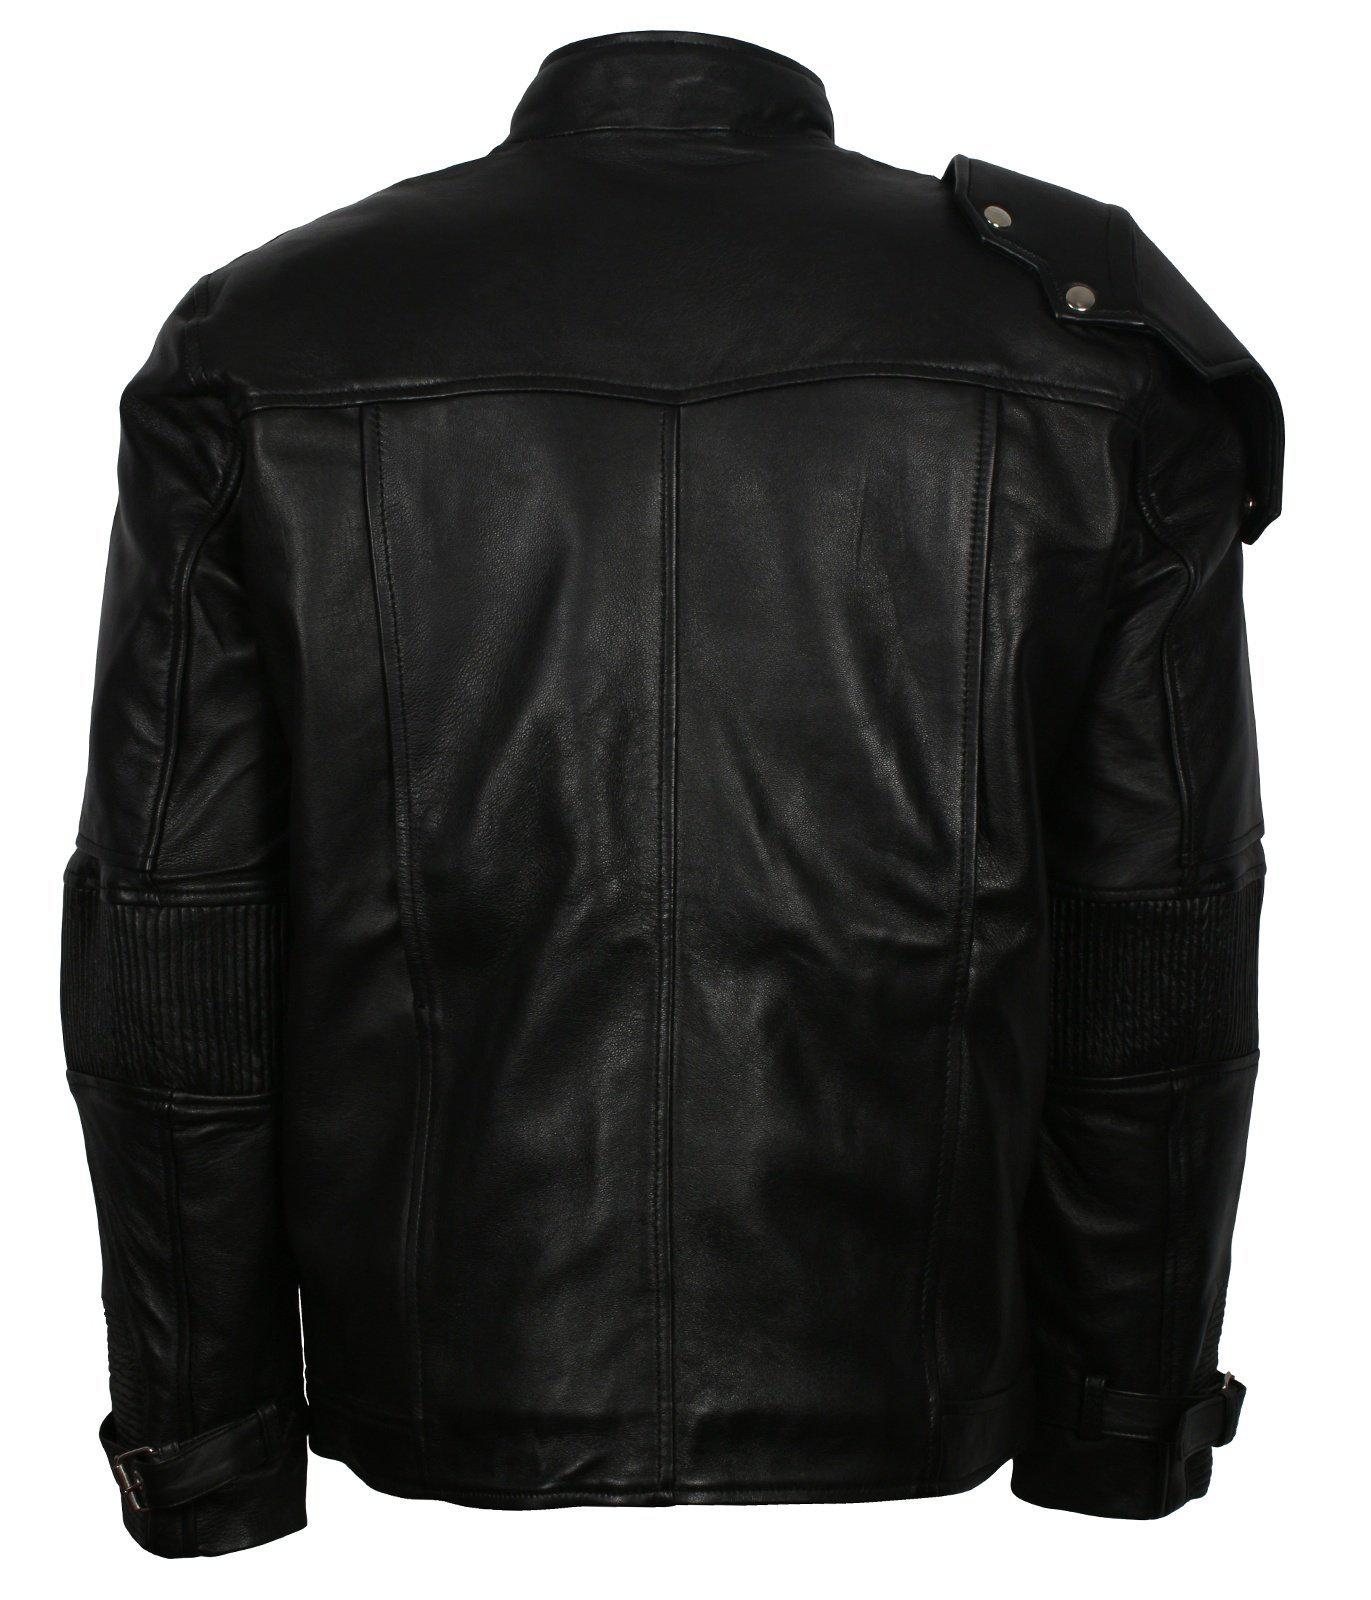 Buy Bucky Barnes Leather Jacket